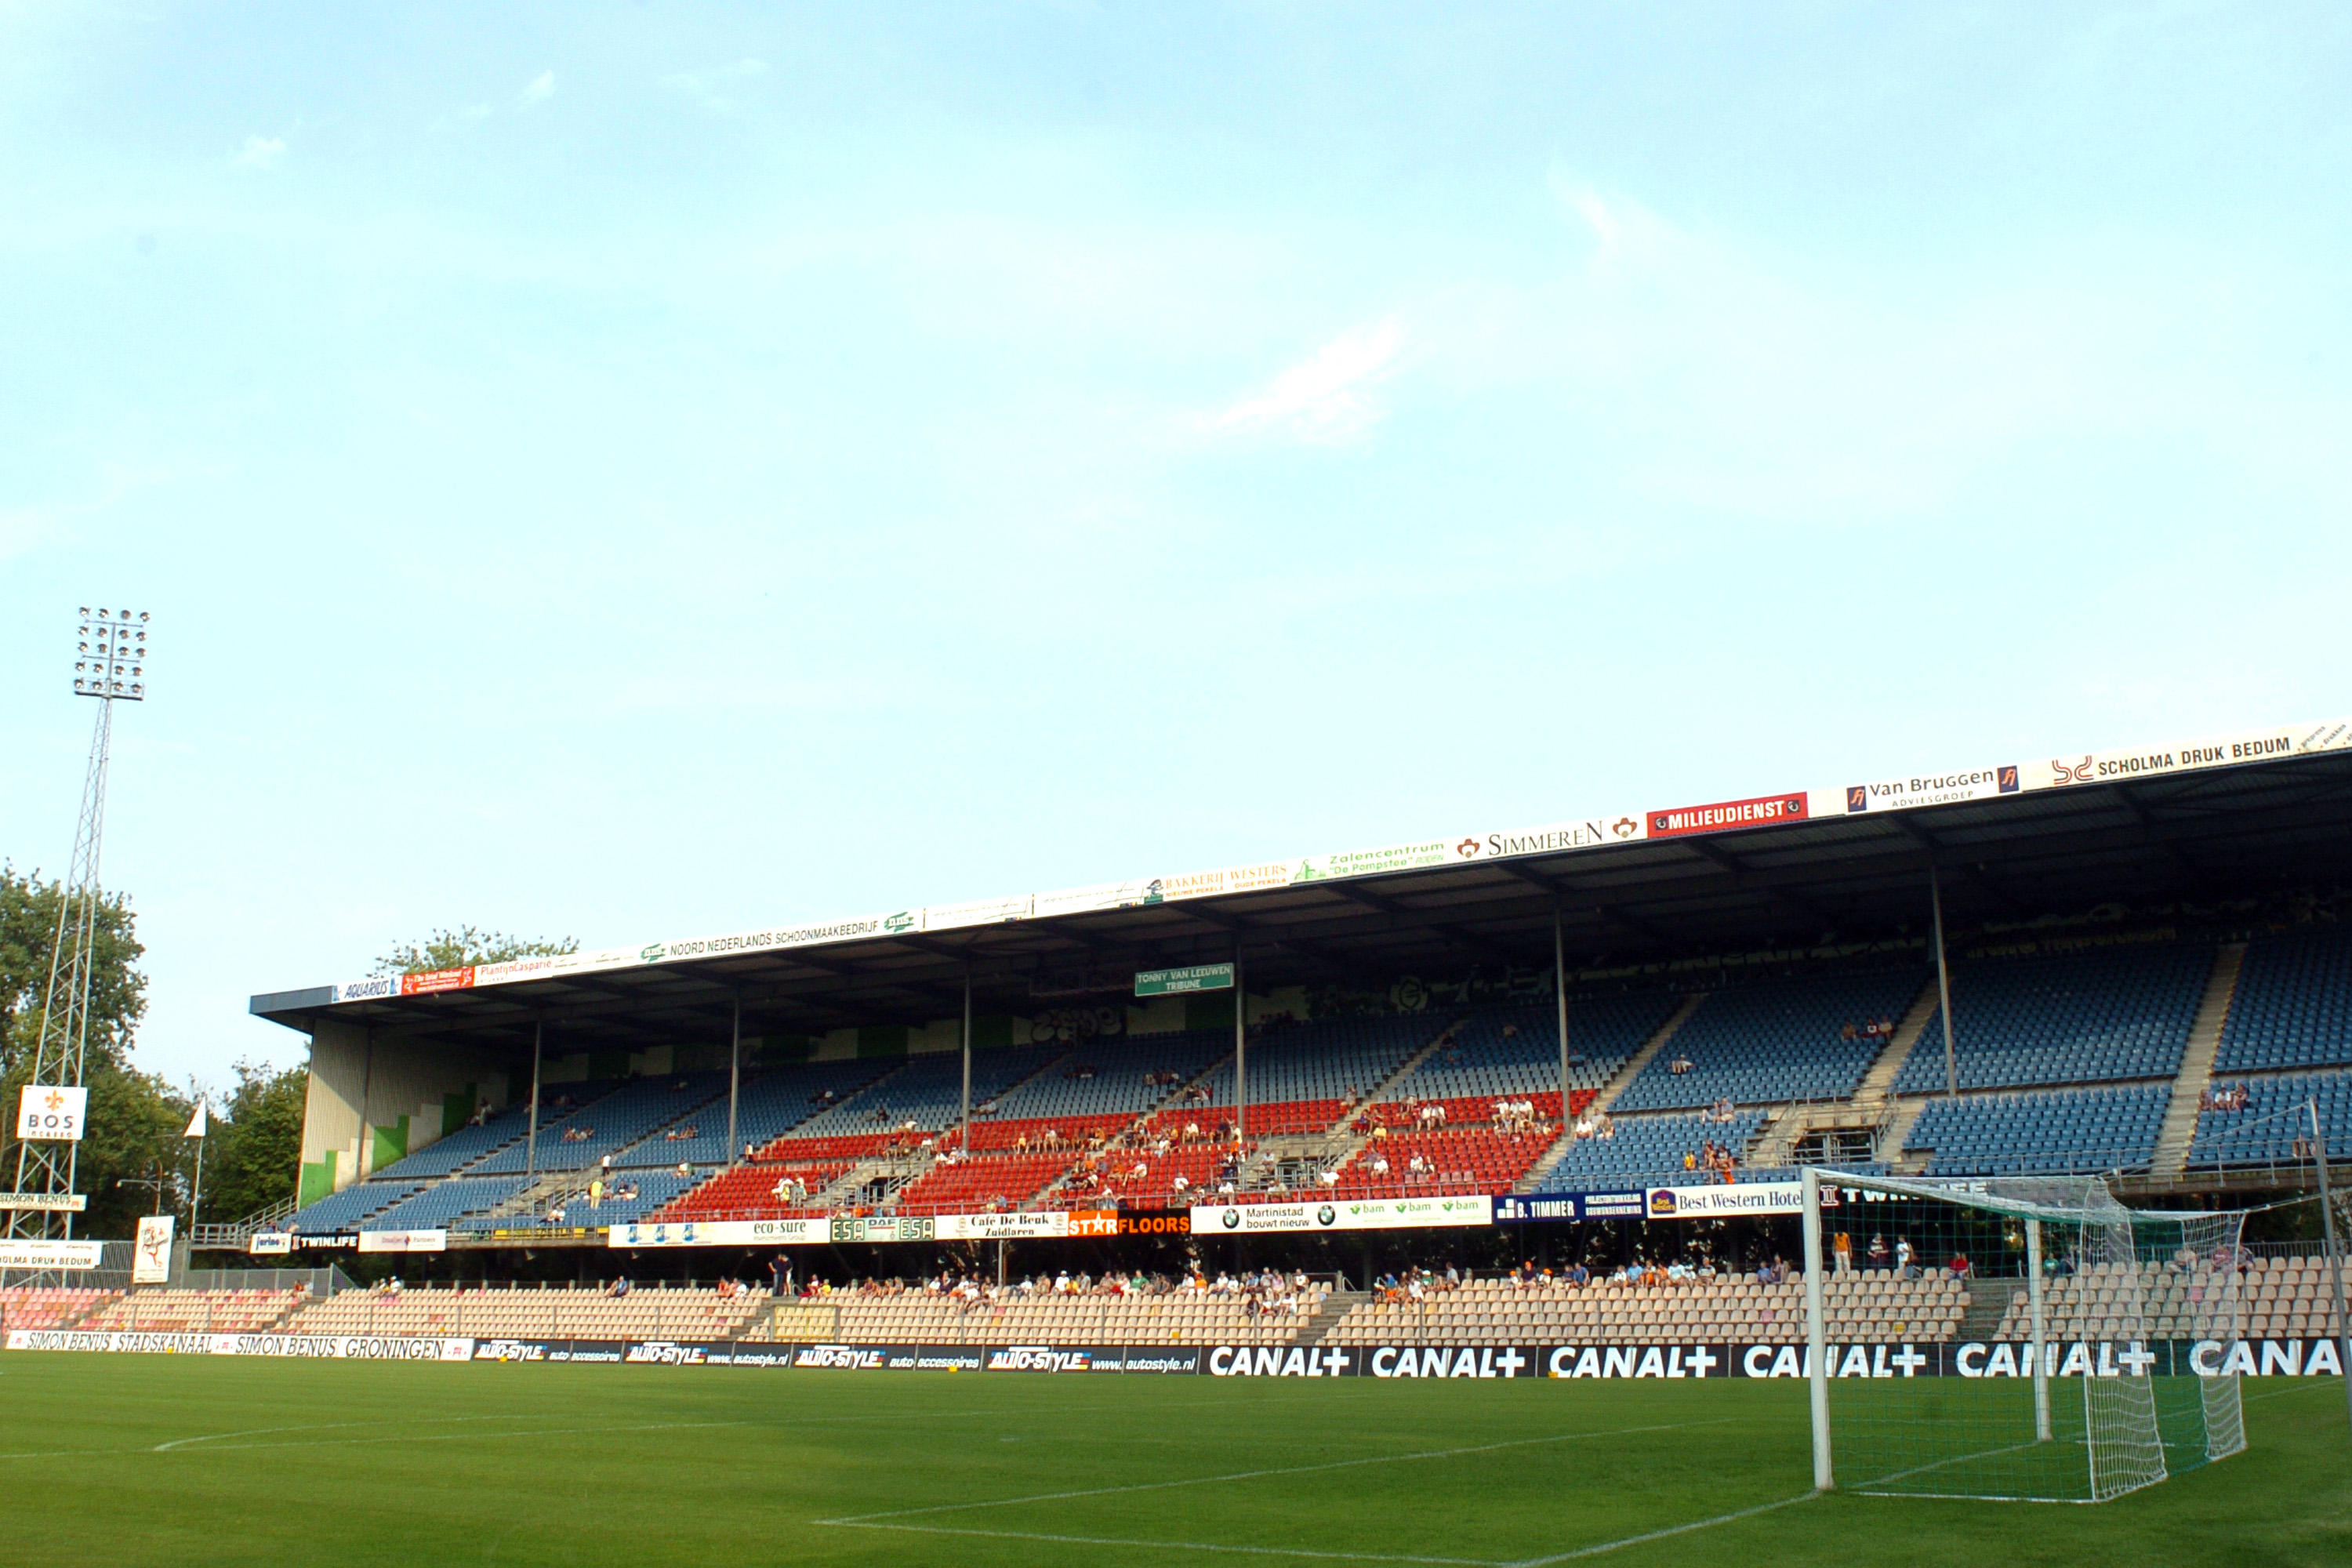 Der FC Groningen spielte sein letztes Spiel am 22. Dezember 2005 im Oosterpark